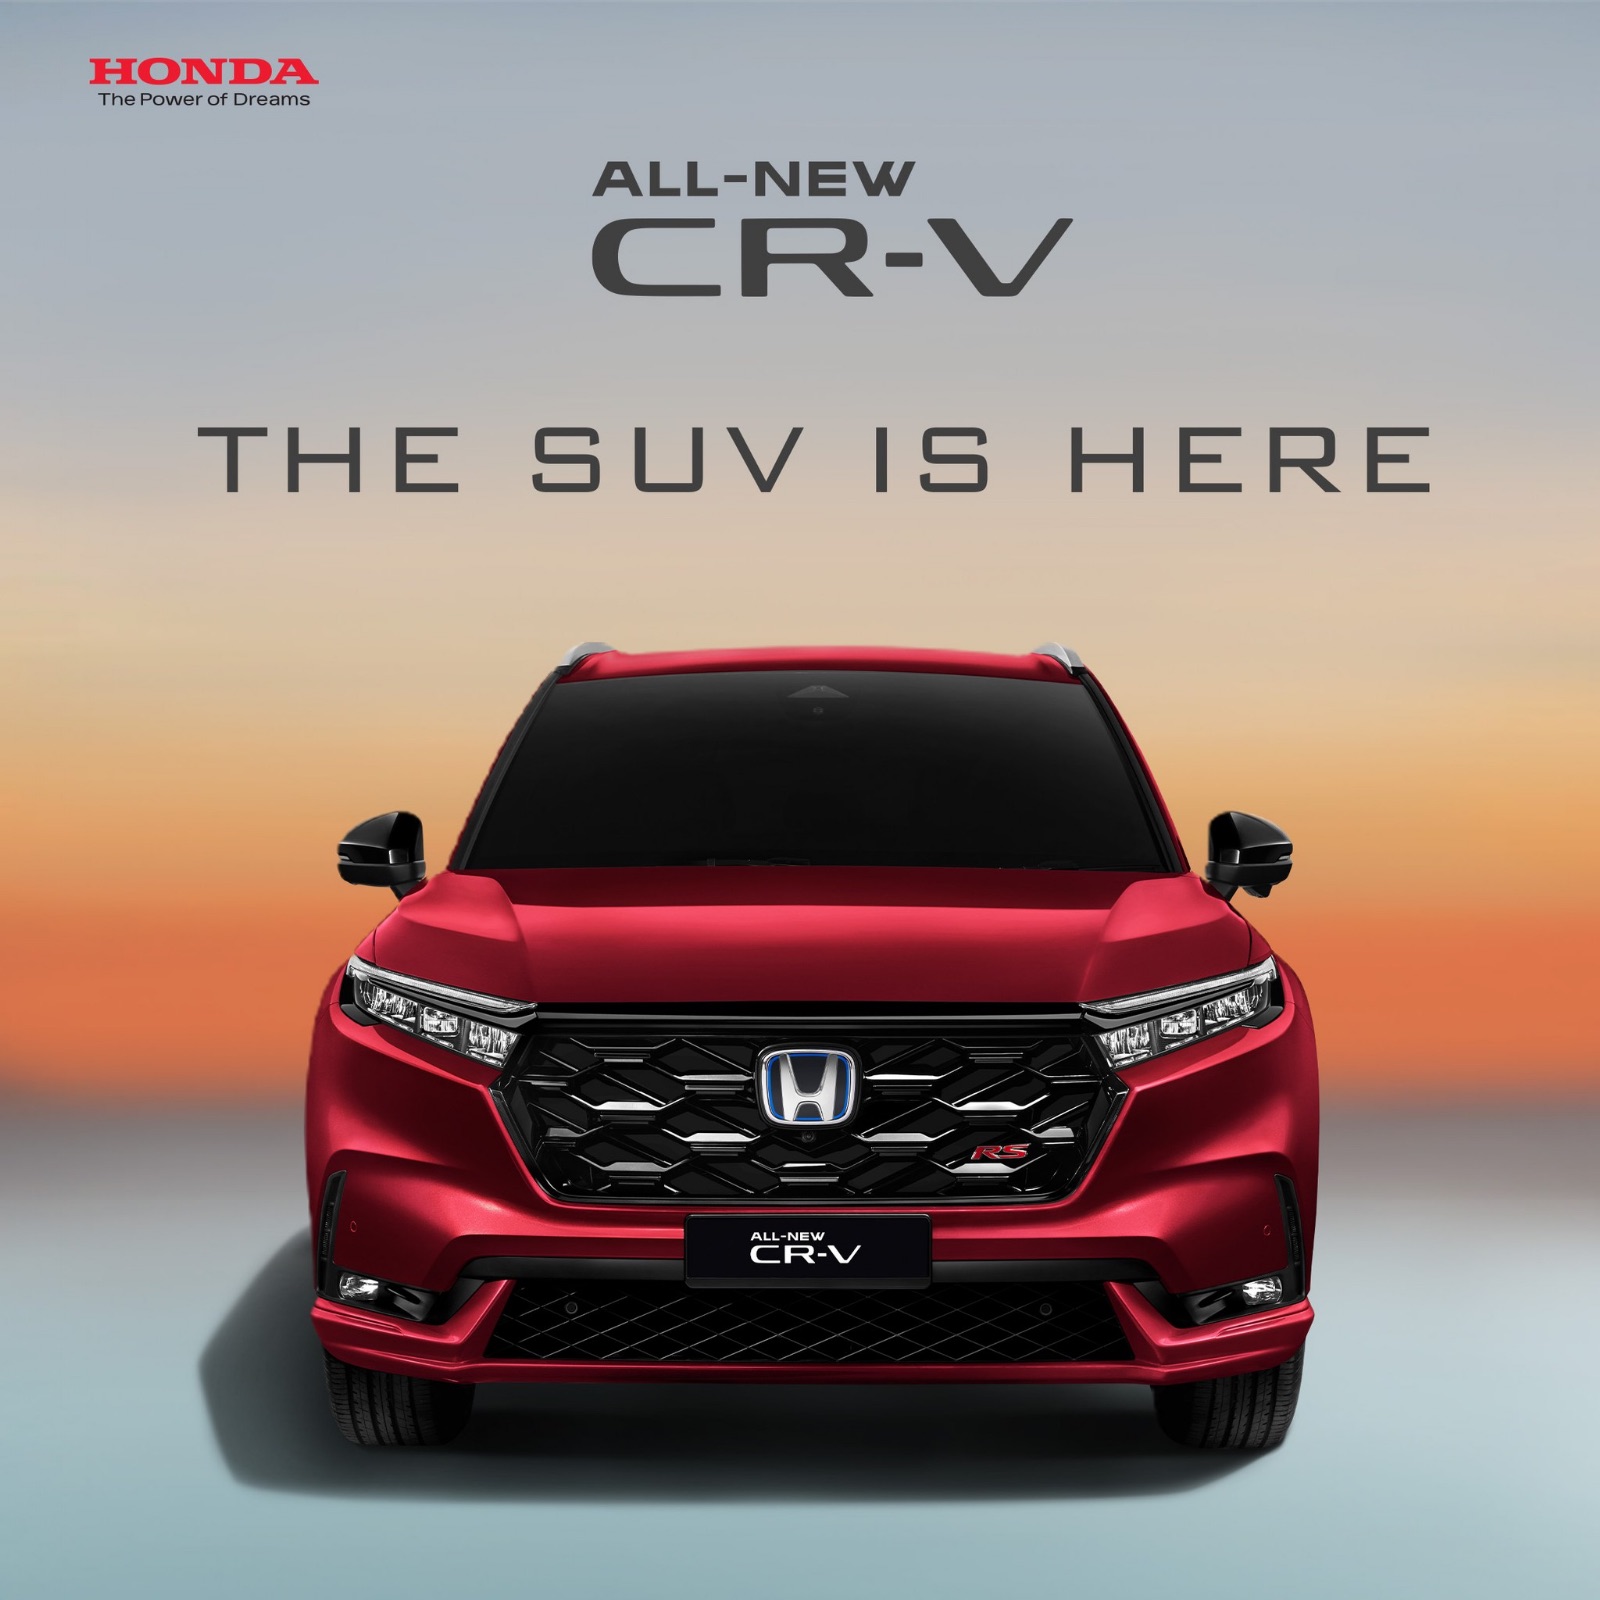 The all-new Honda CR-V pre-orders start now!⚡️